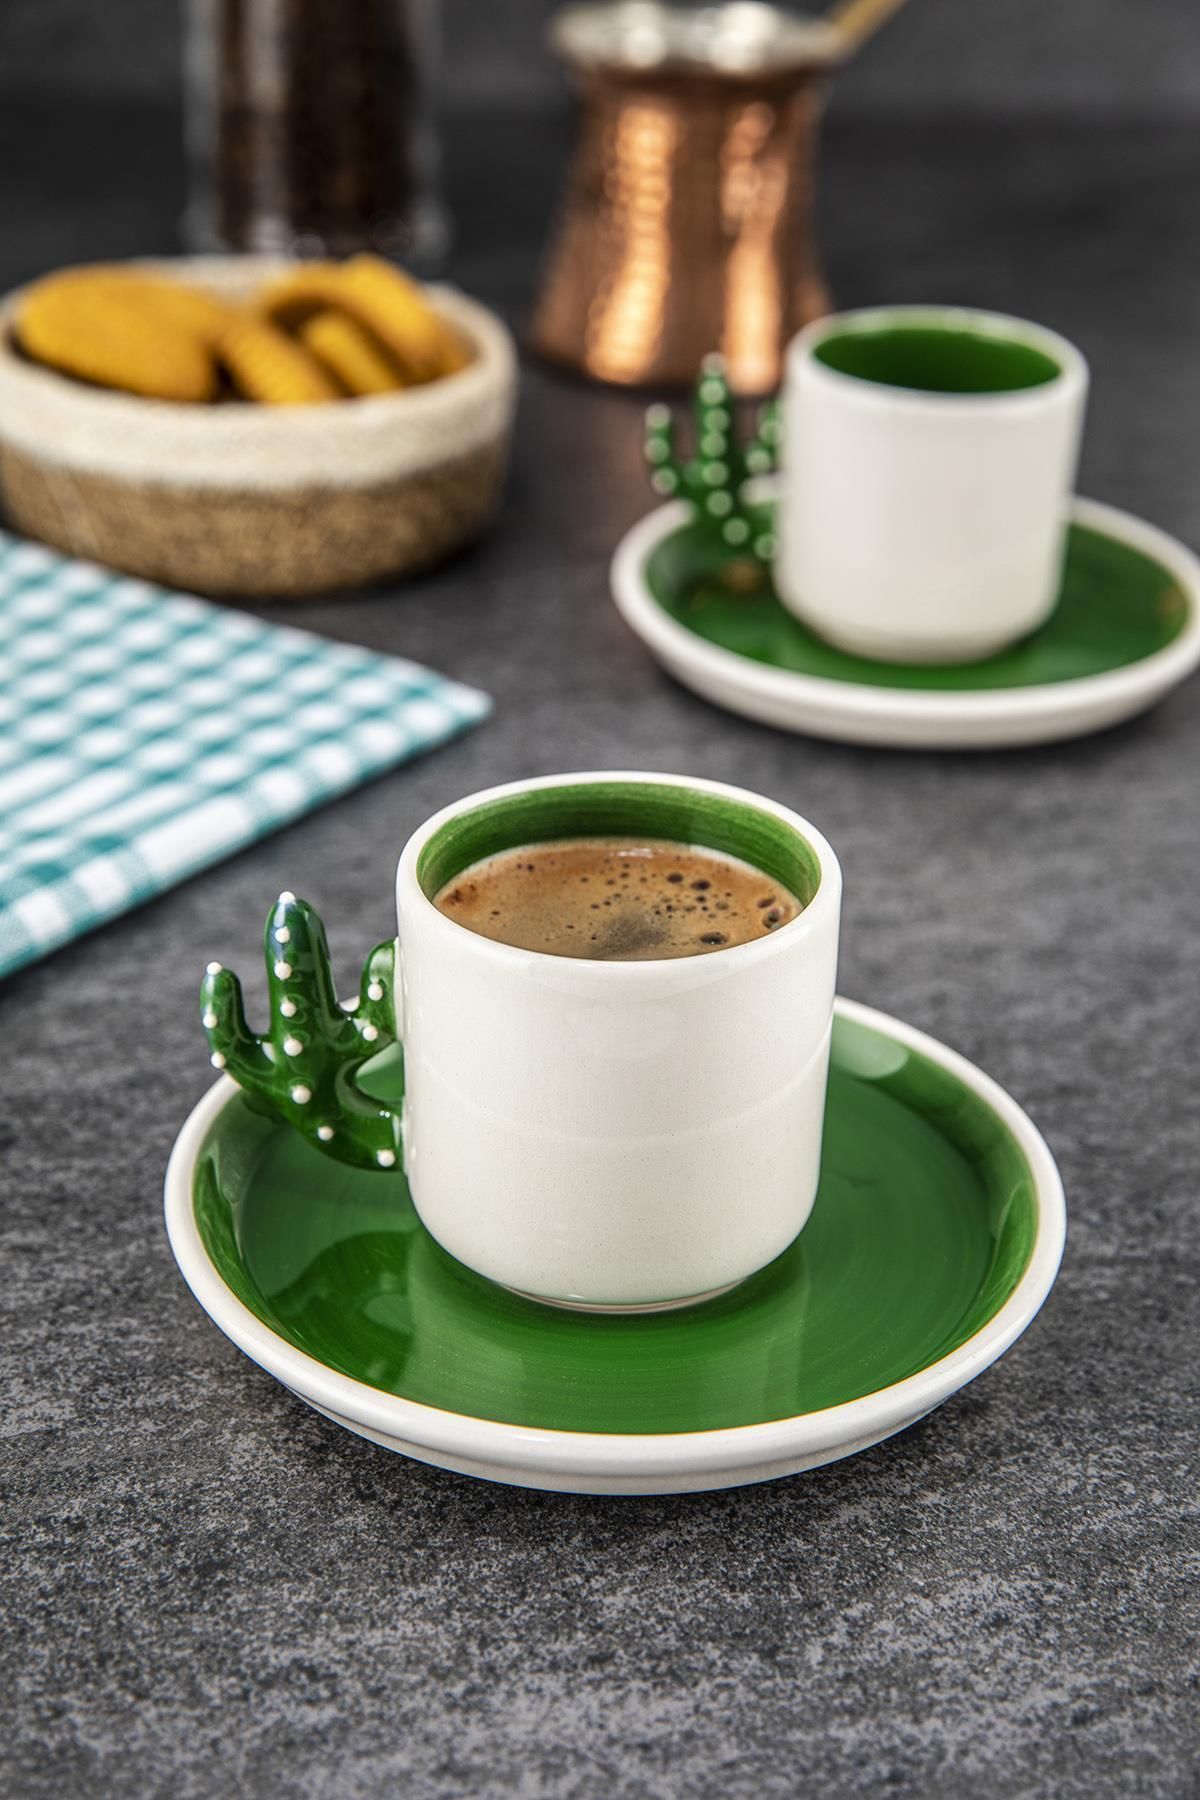 Doreline Kaktüs El Yapımı Türk Kahvesi, Espresso Fincanı Yeşil 2 Adet, Hediyelik 2 Li Fincan